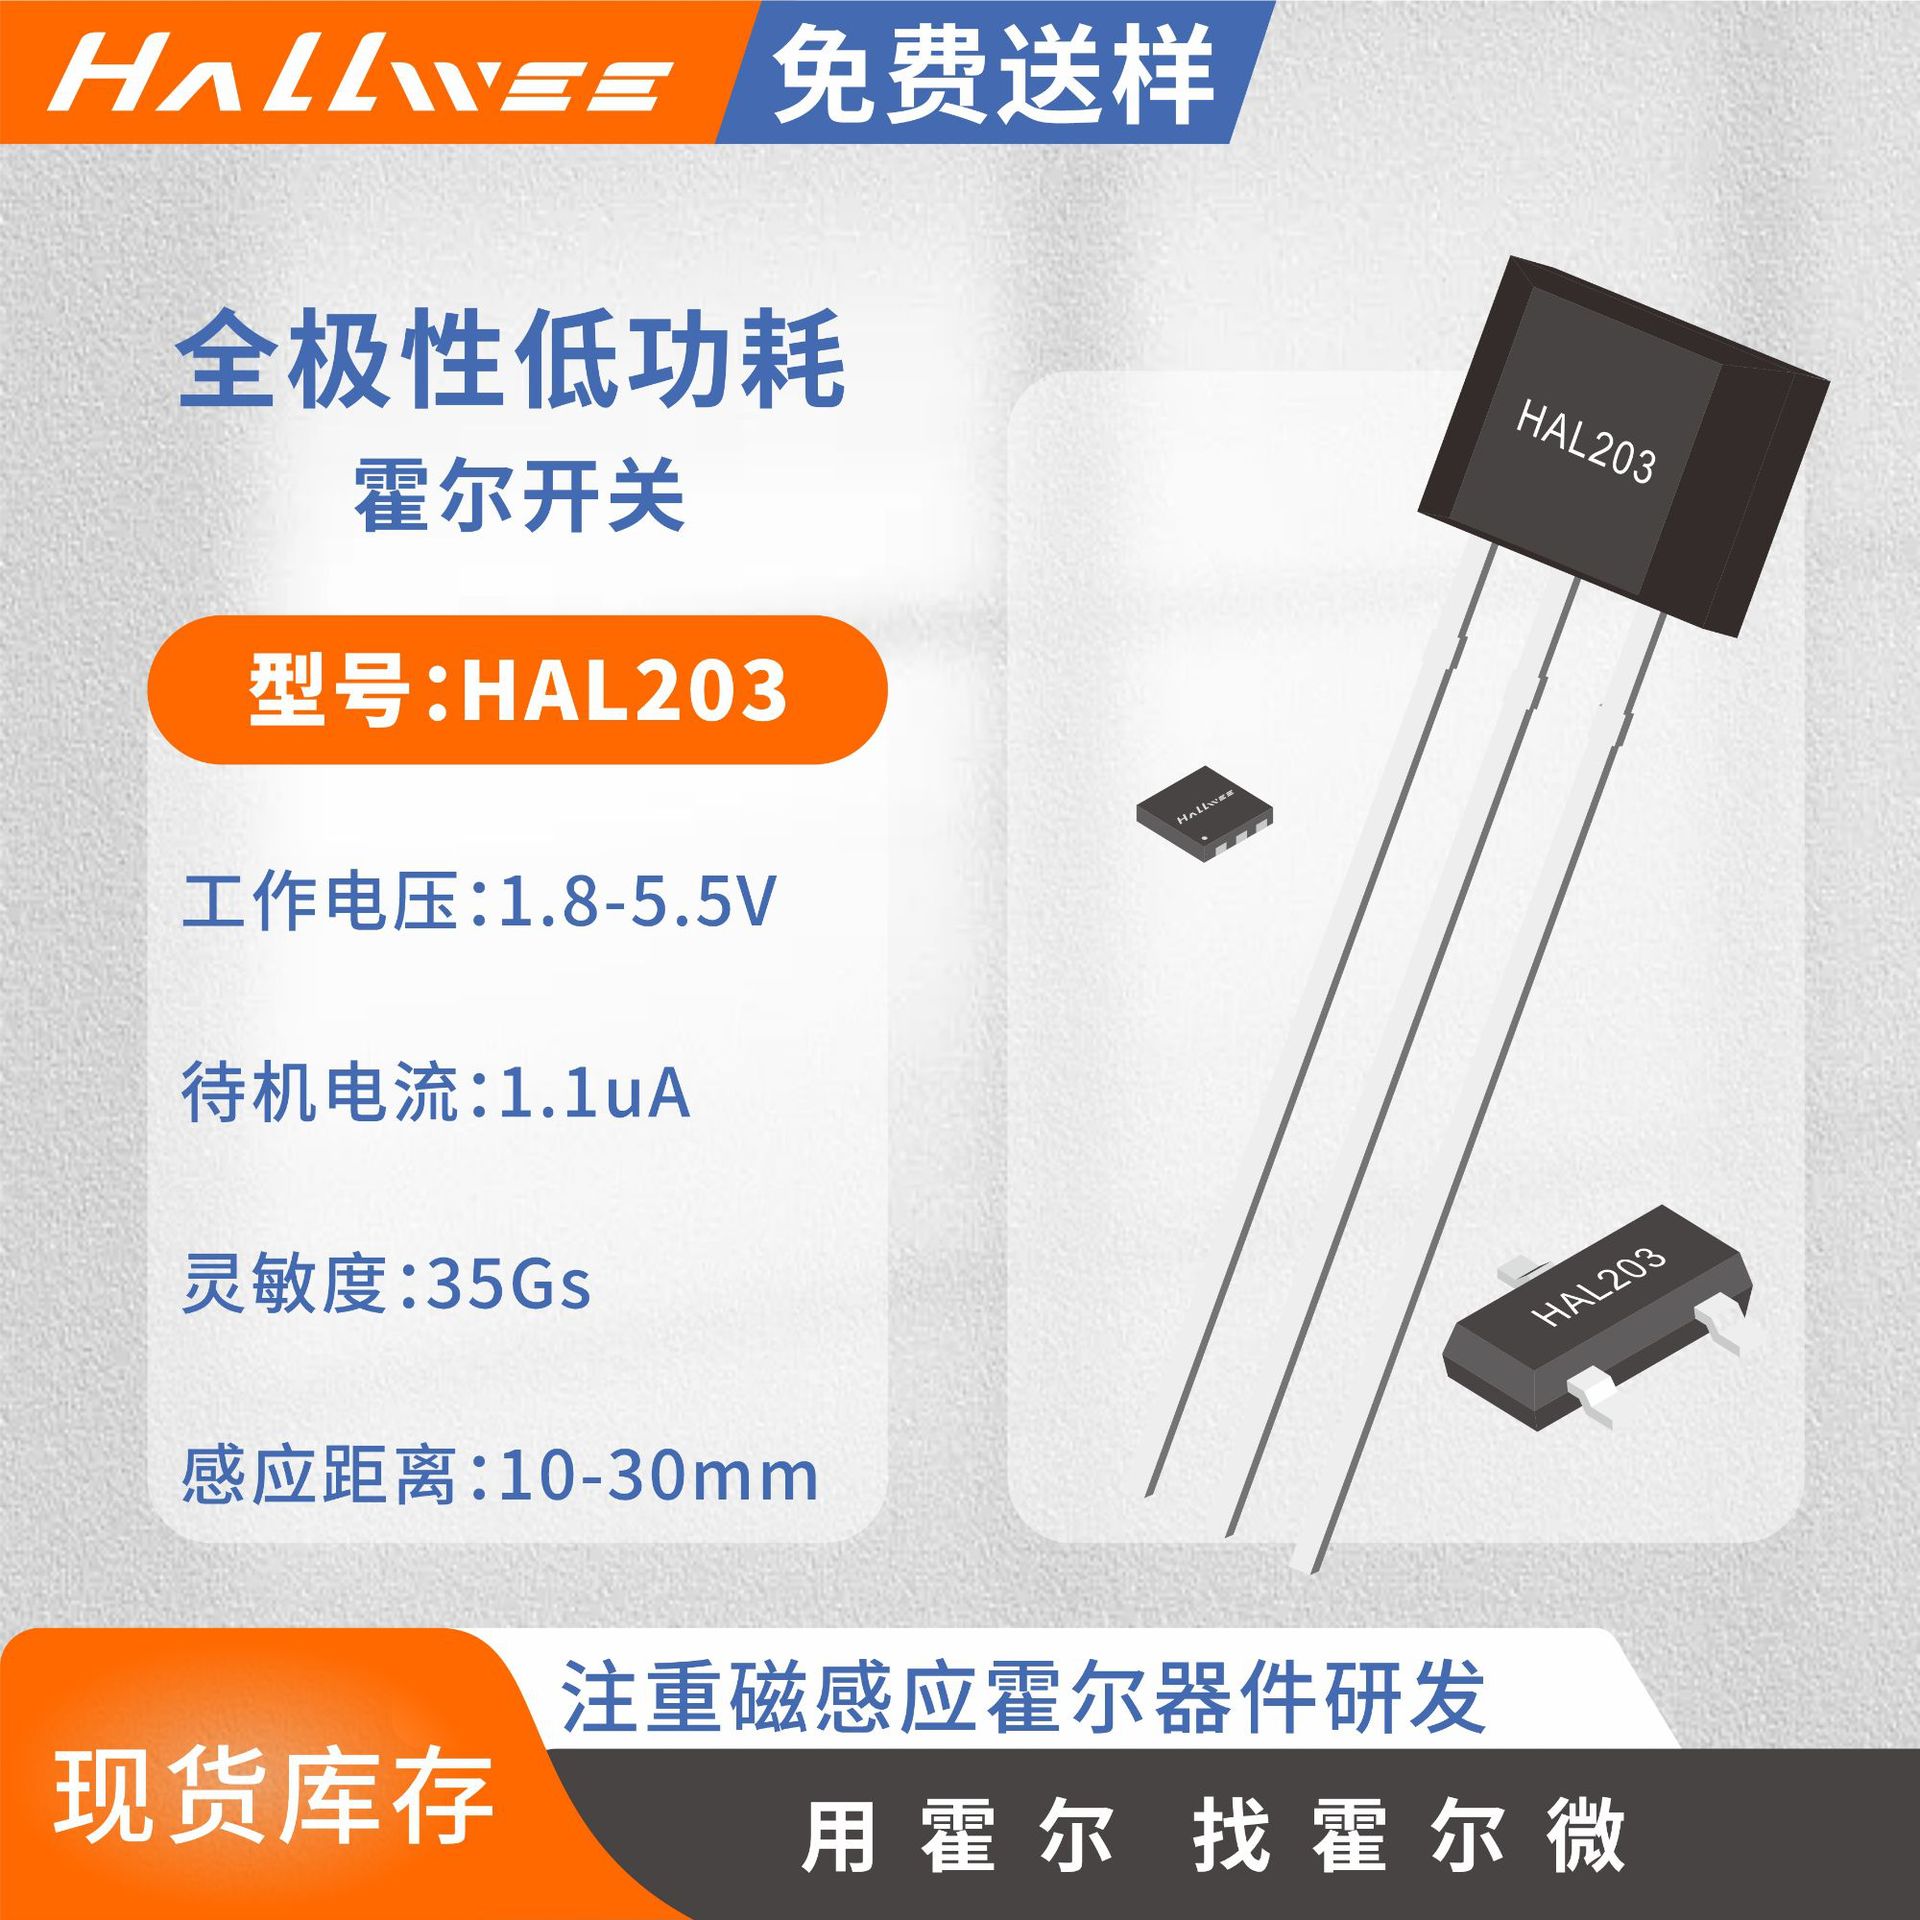 供应低功耗霍尔传感器HAL203 电子贺卡磁控霍尔开关 玩具霍尔ic